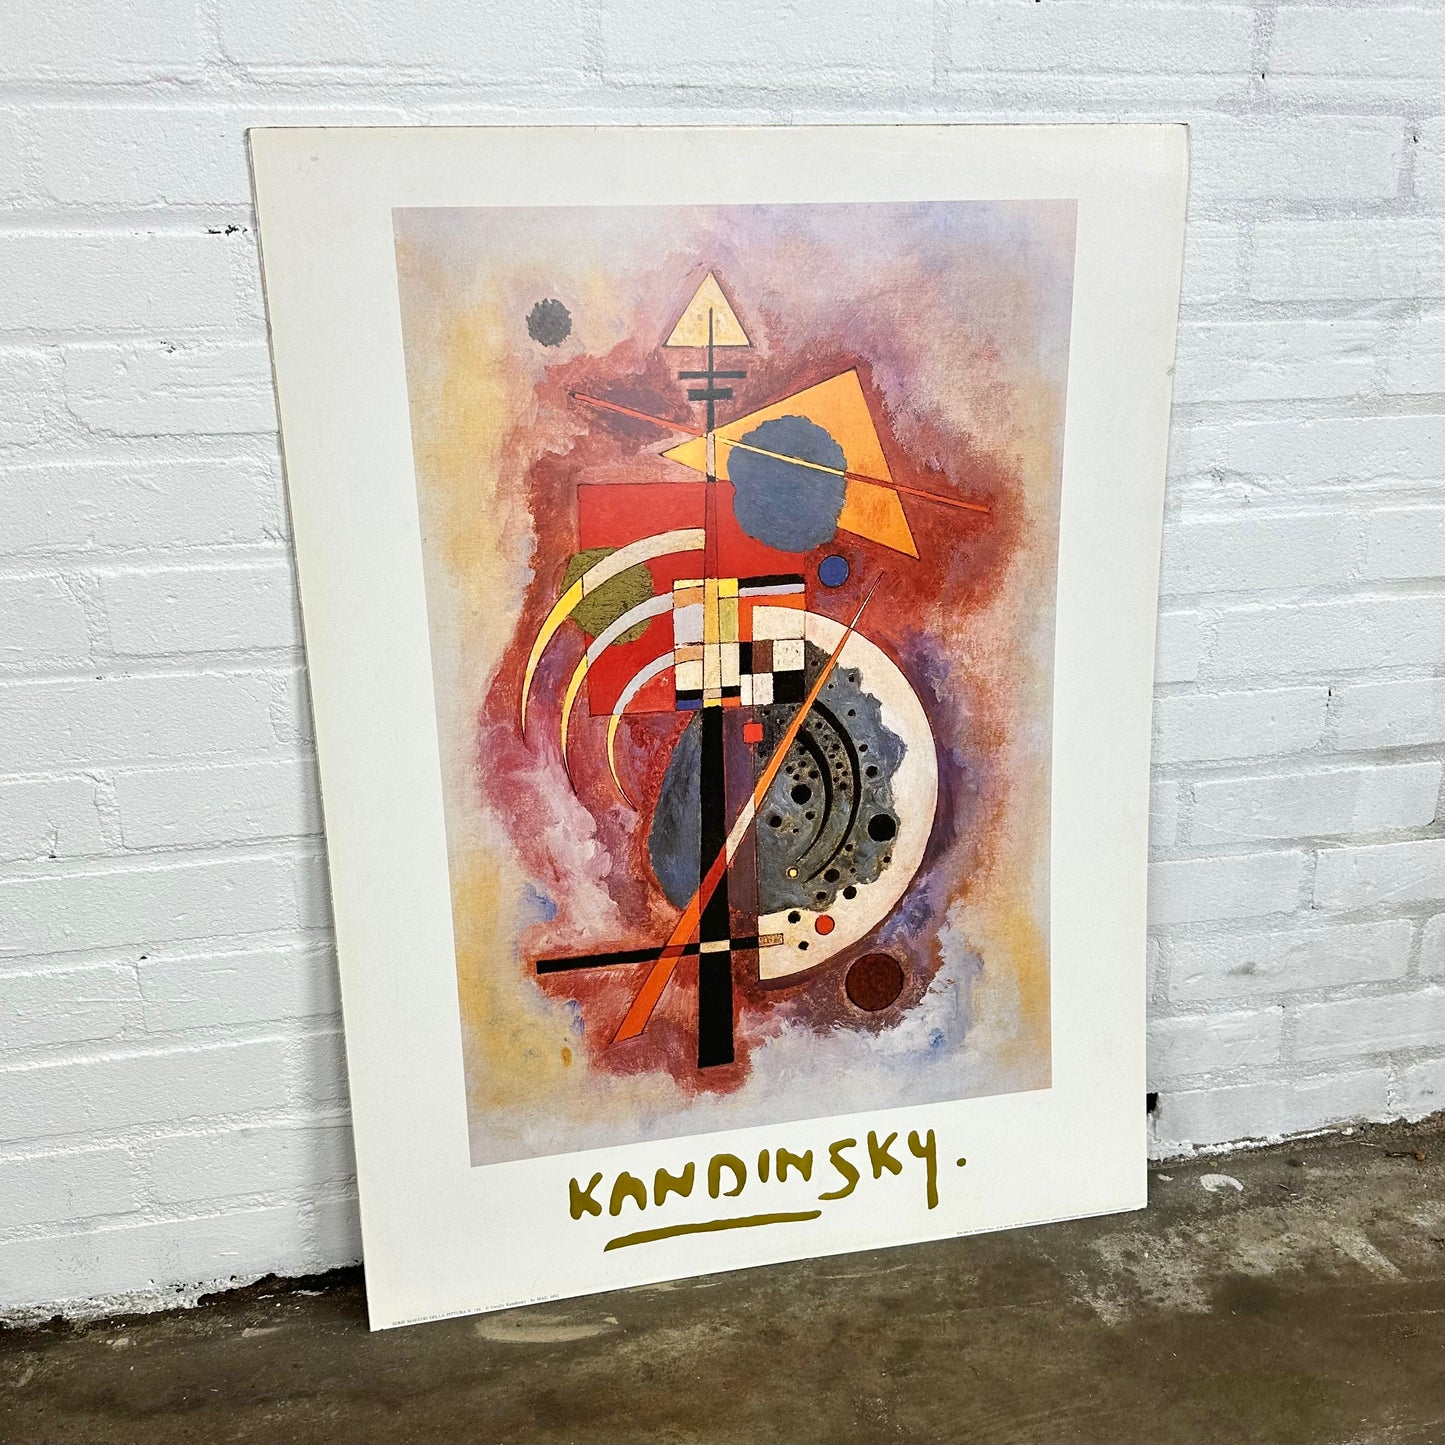 kandinsky-hommage-an-grohmann-poster